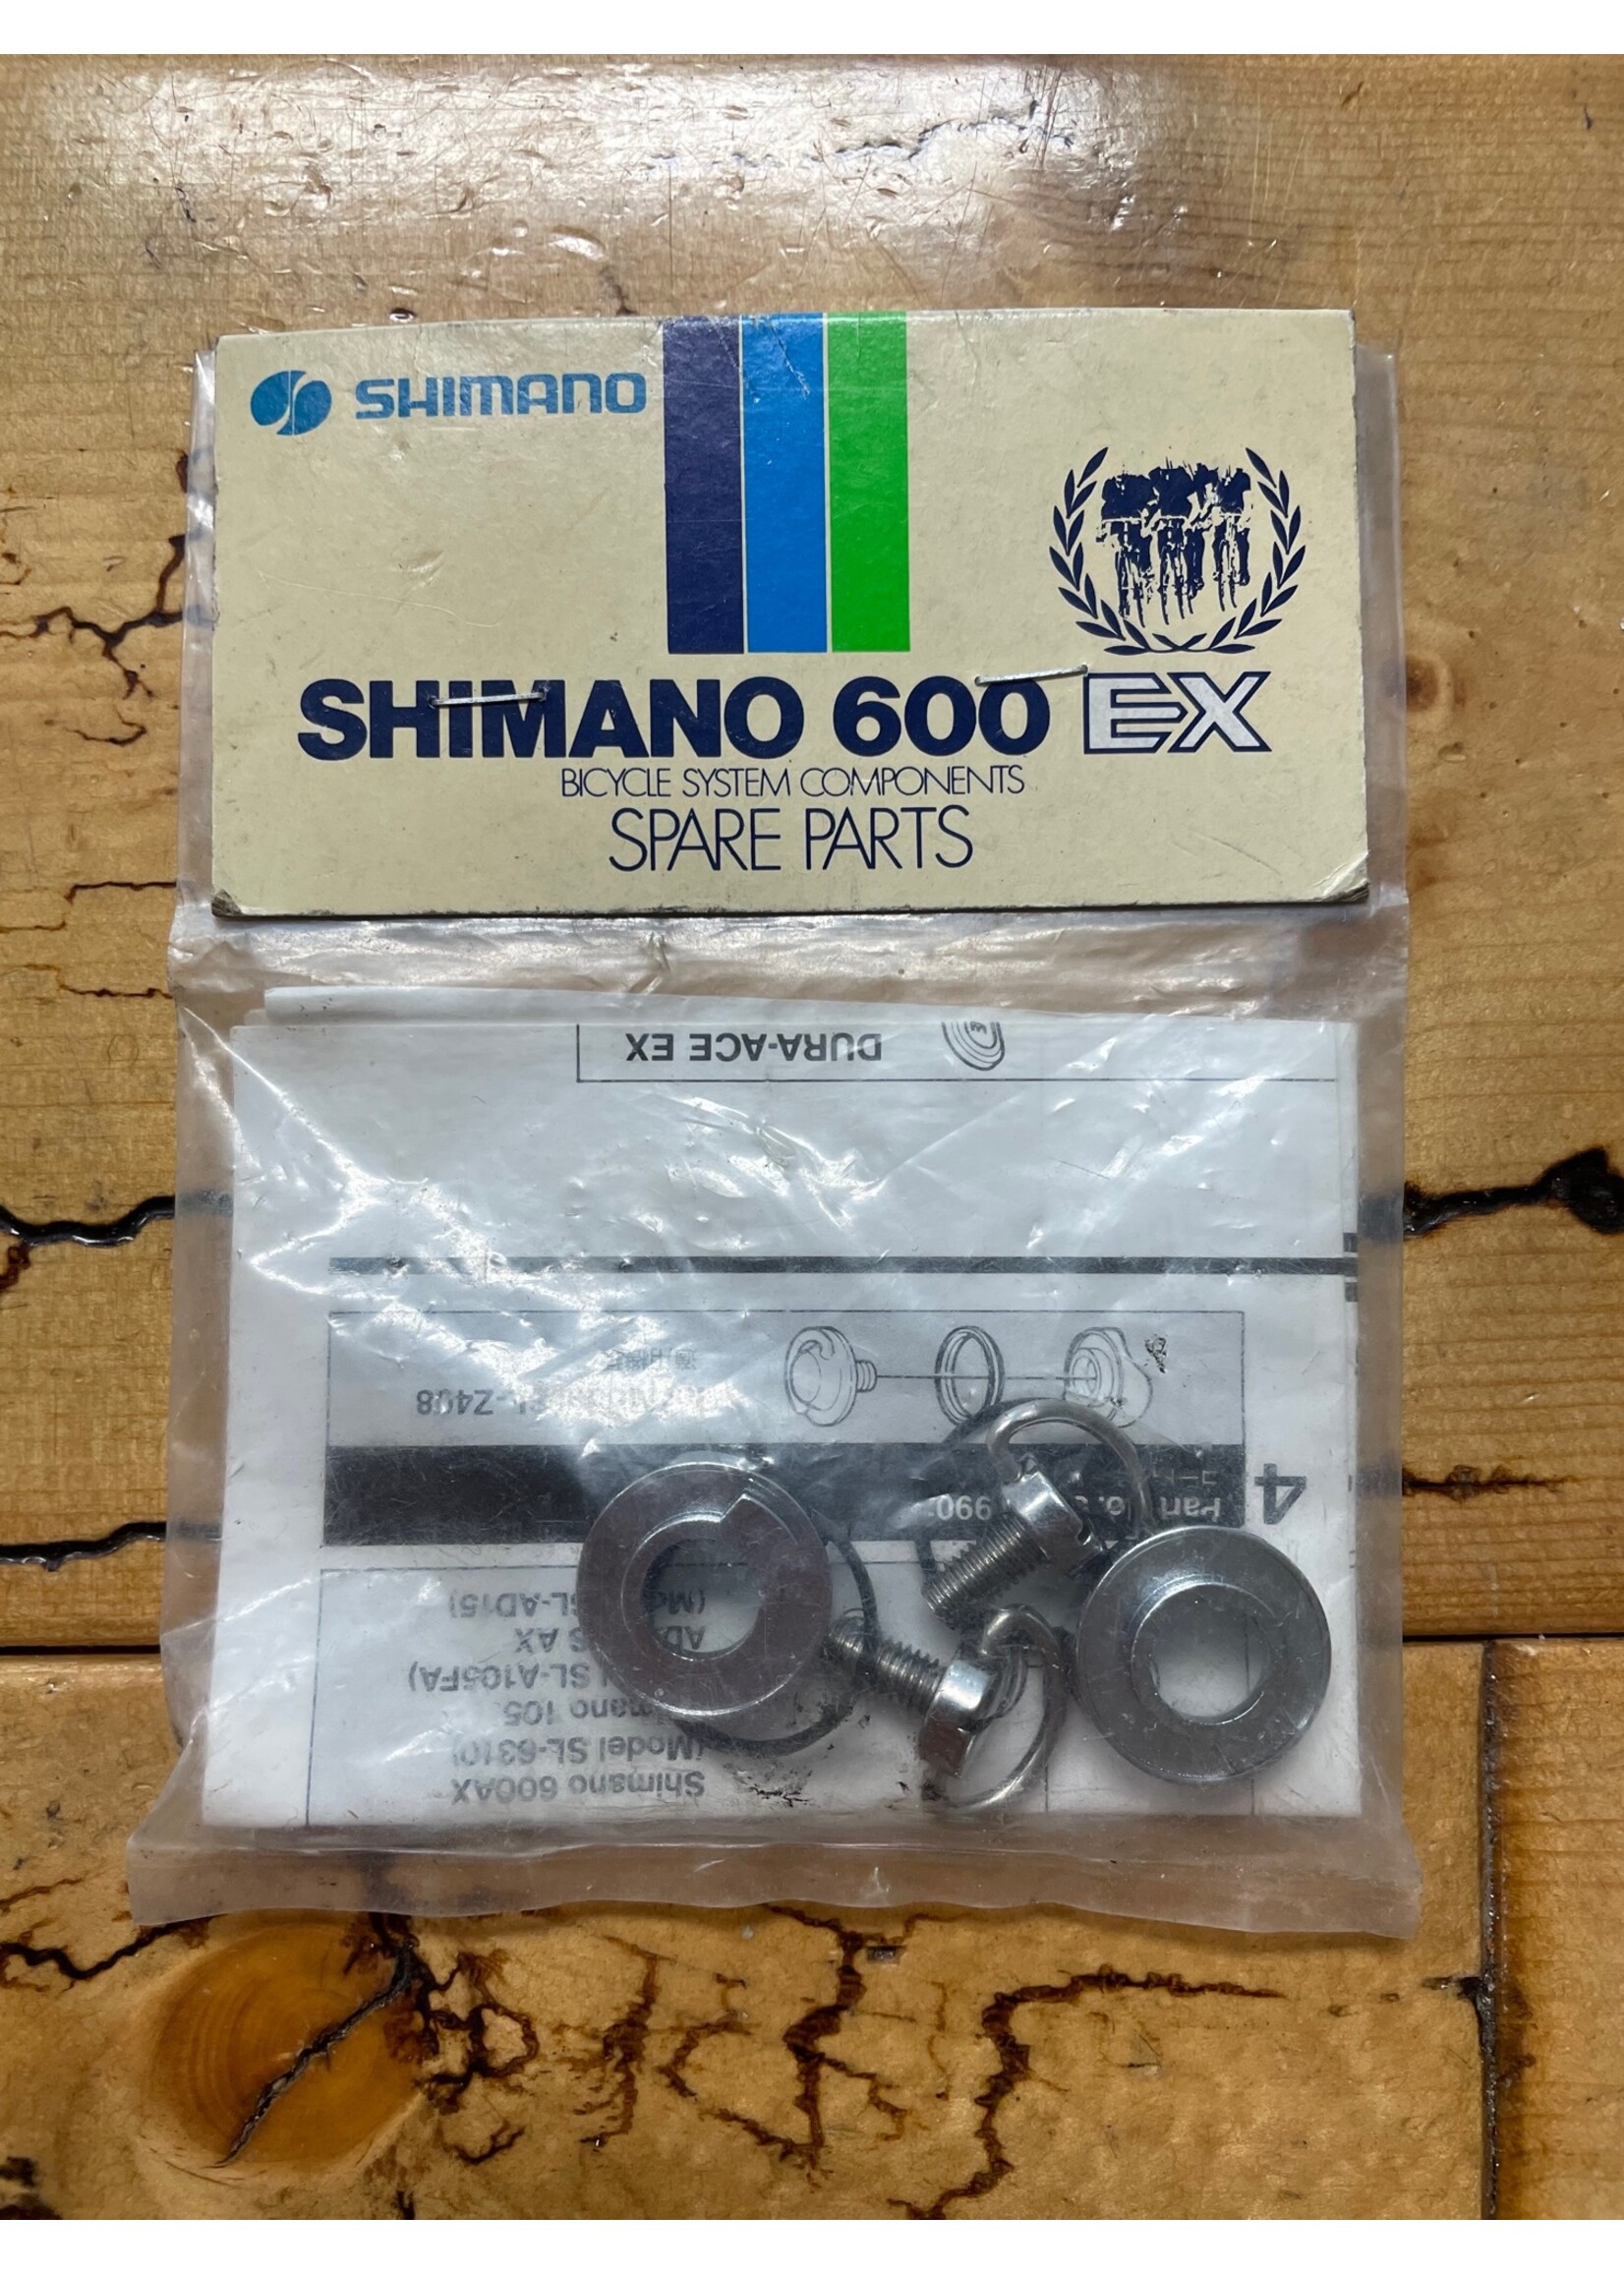 SHIMANO Shimano 600 EX Shifter Spare Parts NOS